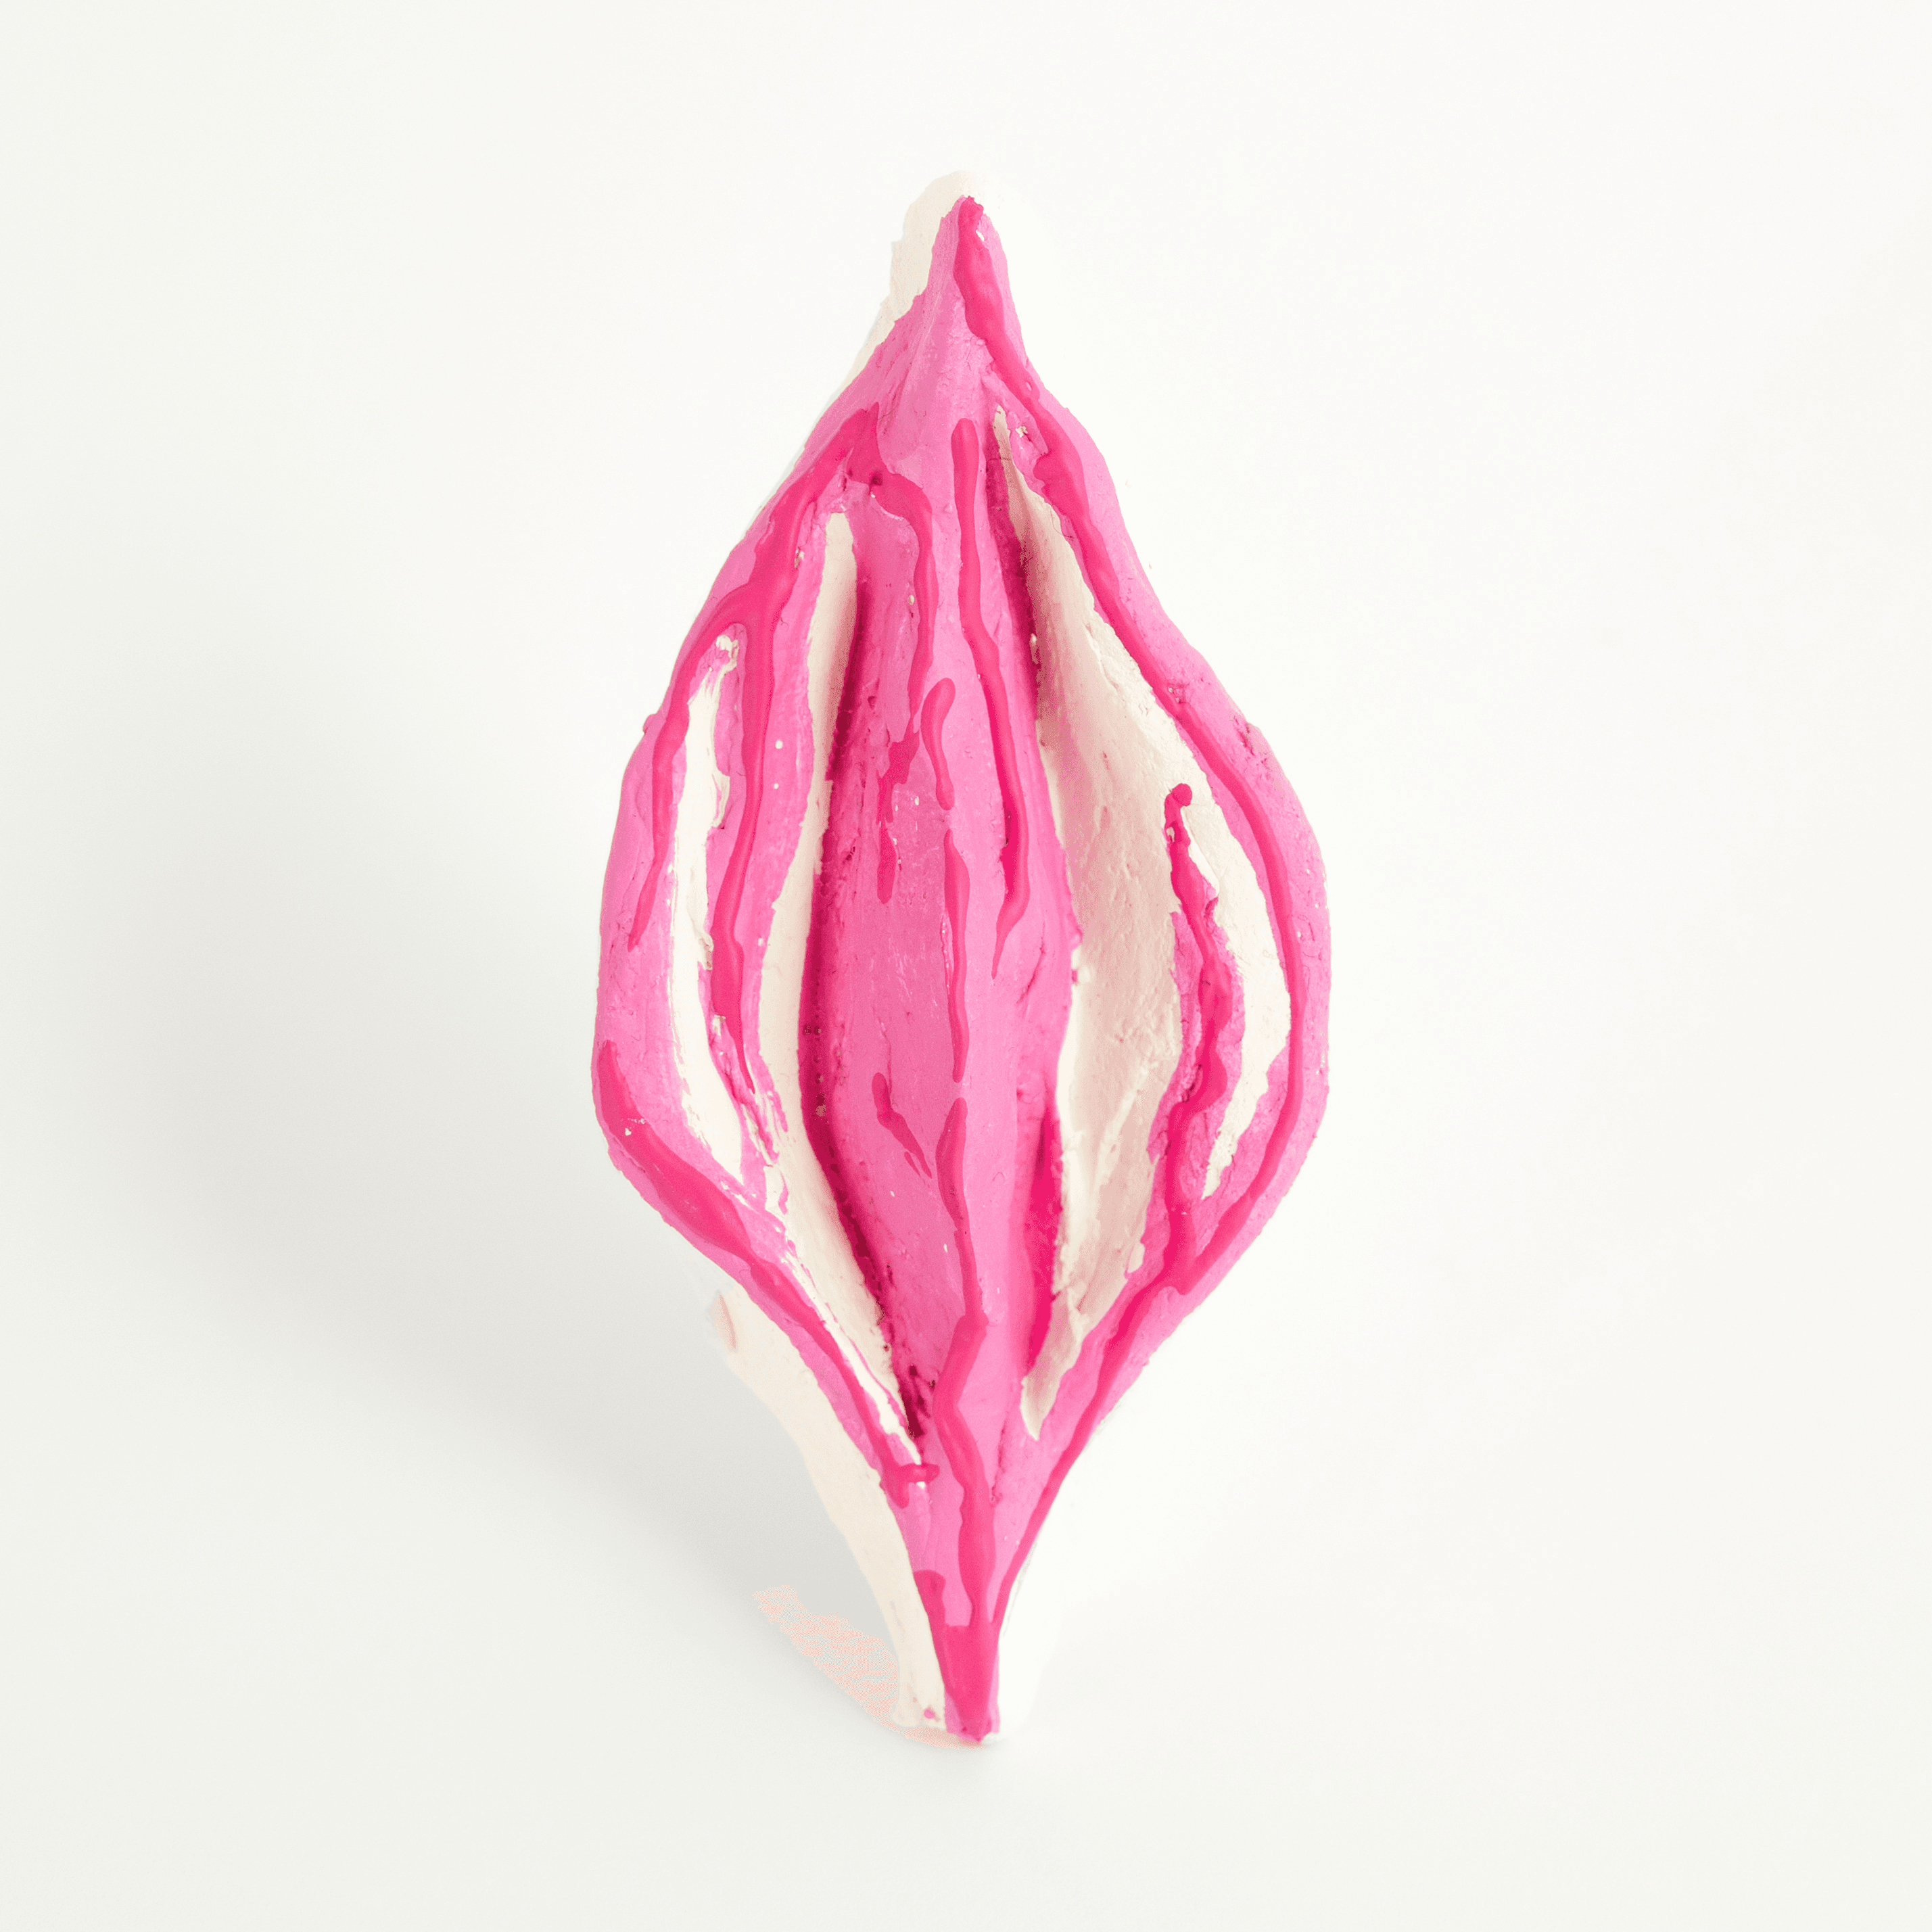 Vagina NFTs